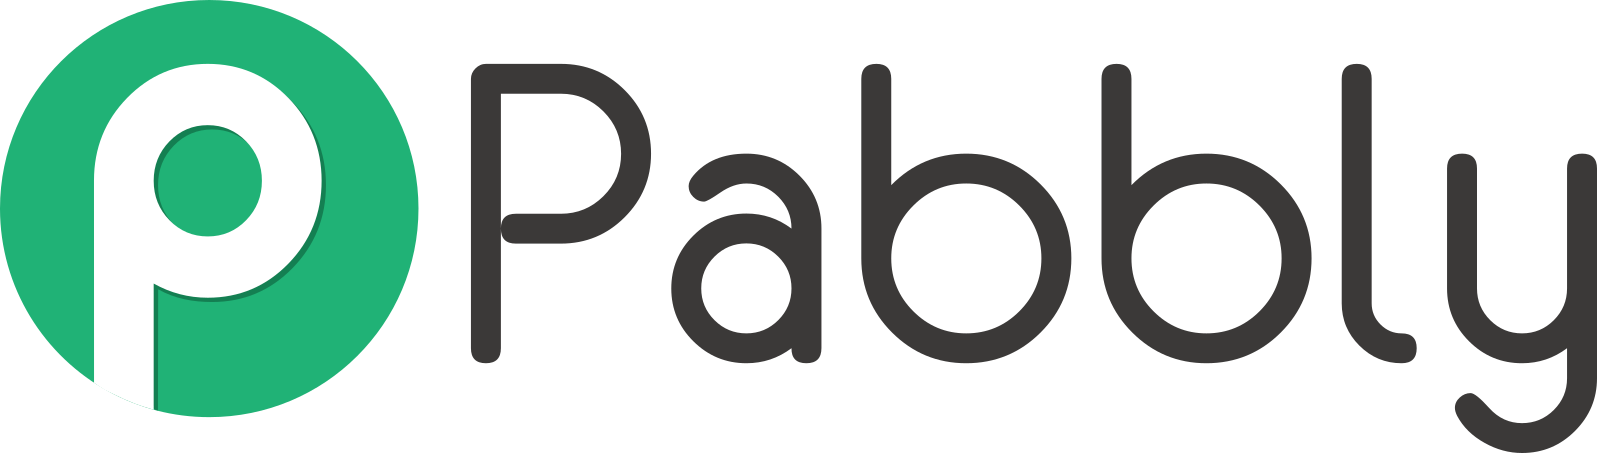 Pabbly-Logo